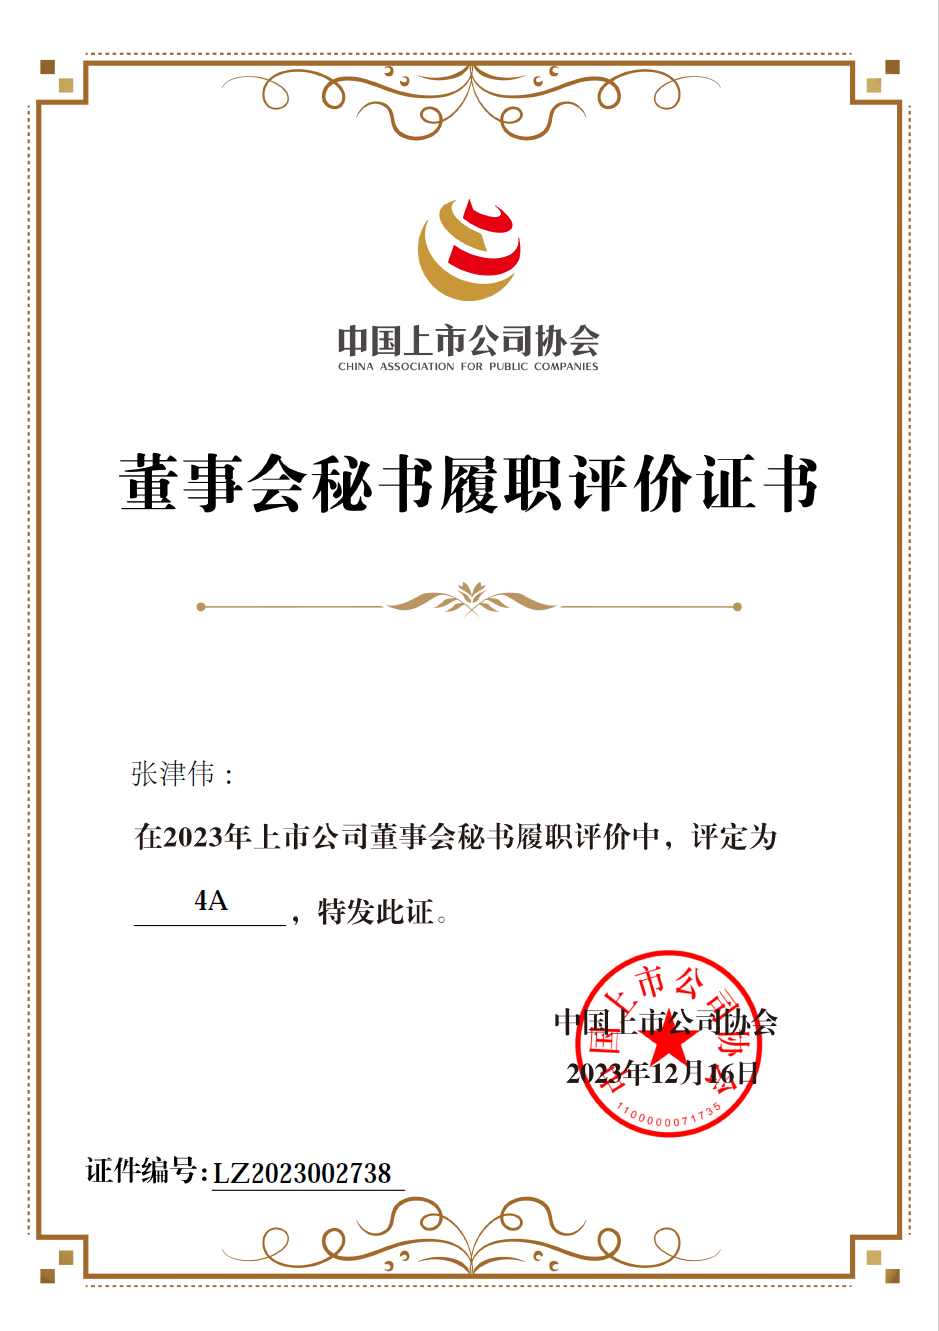 中國上市公司協會2023年“上市公司董秘履職評價”4A獎項